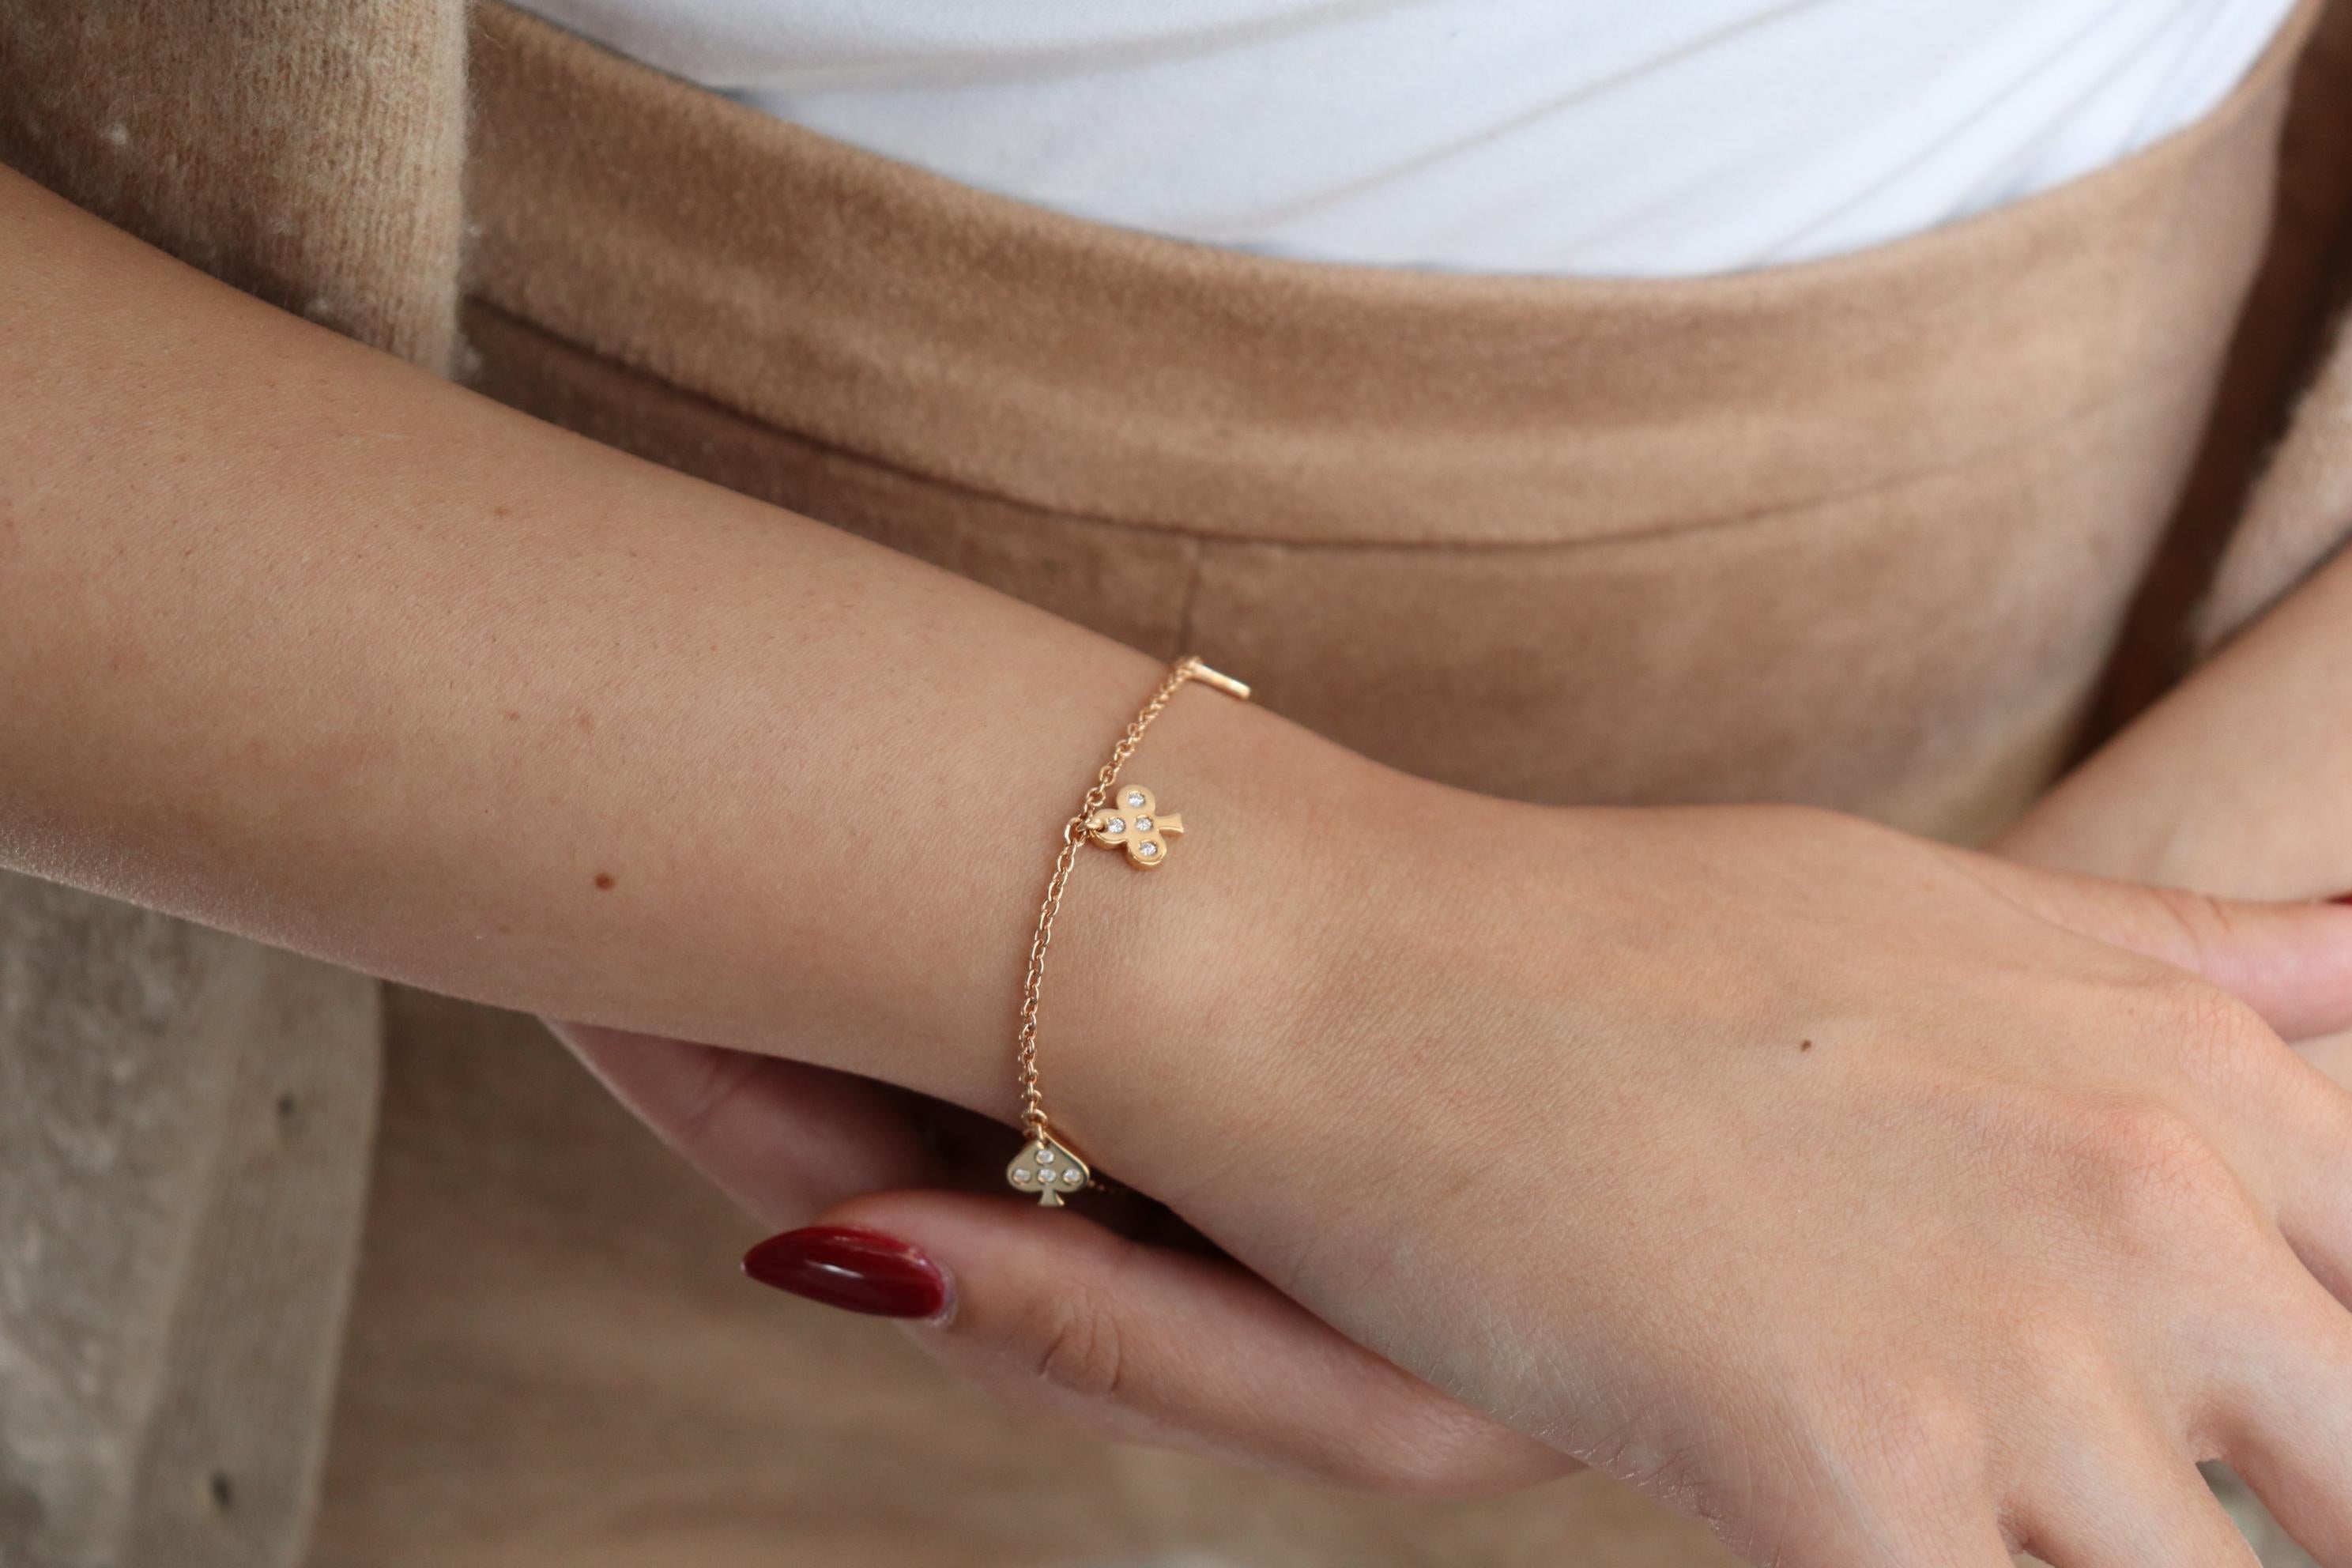 le bracelet en or rose 18 carats fait partie de notre collection Jackpot. Ce magnifique bracelet est orné de breloques qui symbolisent la collection. Chaque breloque est ornée de diamants naturels ronds incolores d'une valeur totale de 0,20 carat.